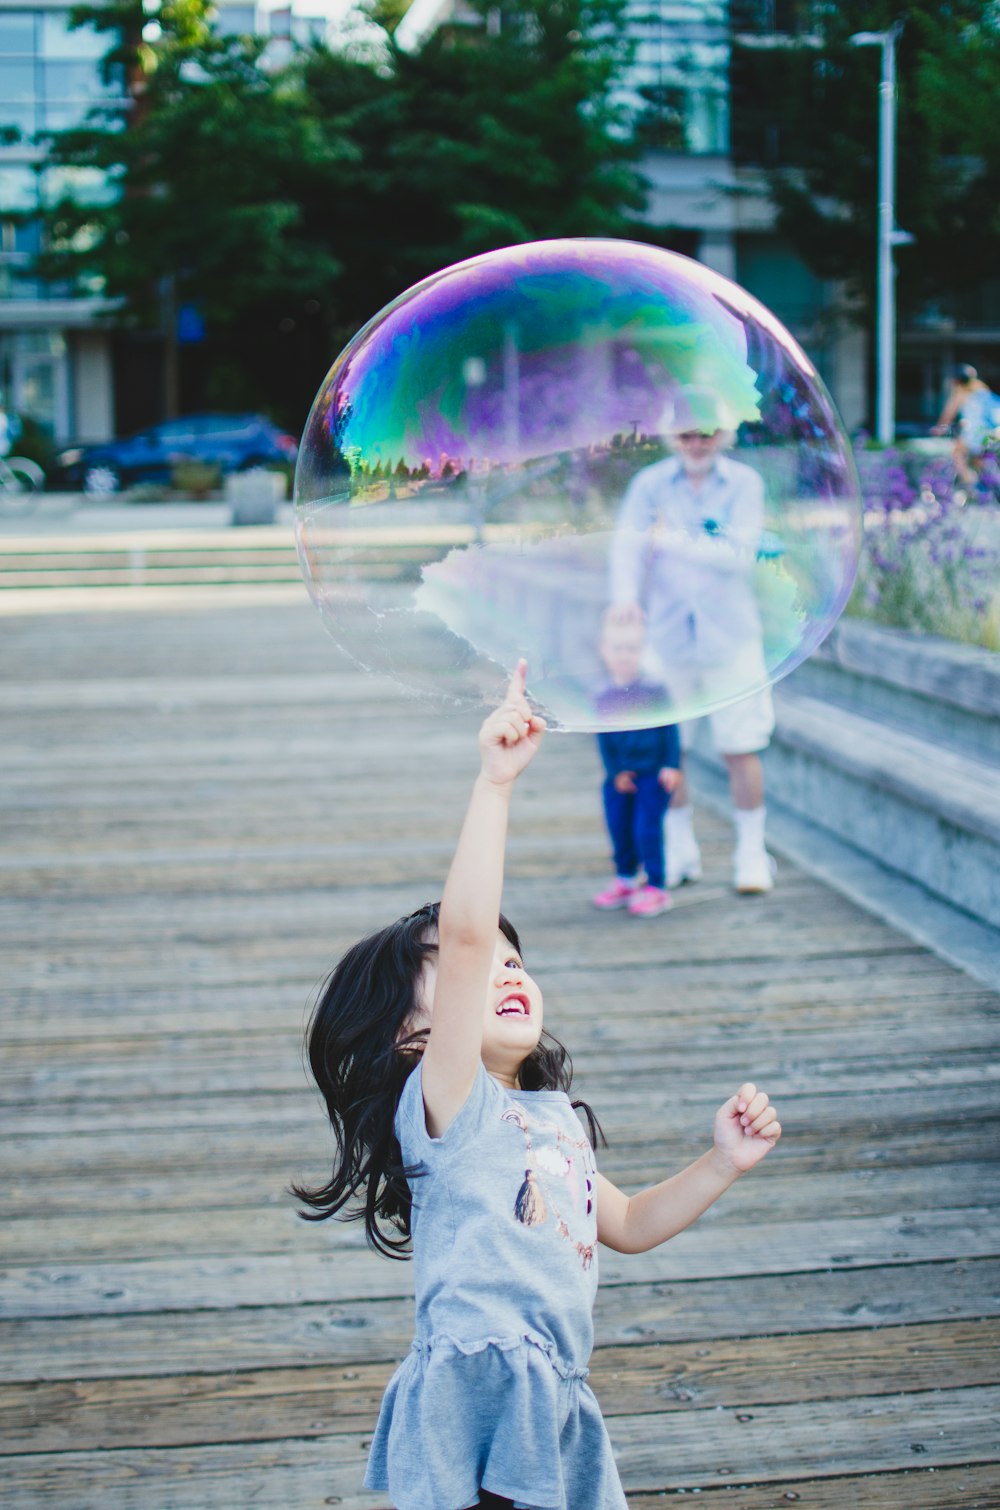 chica con camisa blanca jugando burbujas